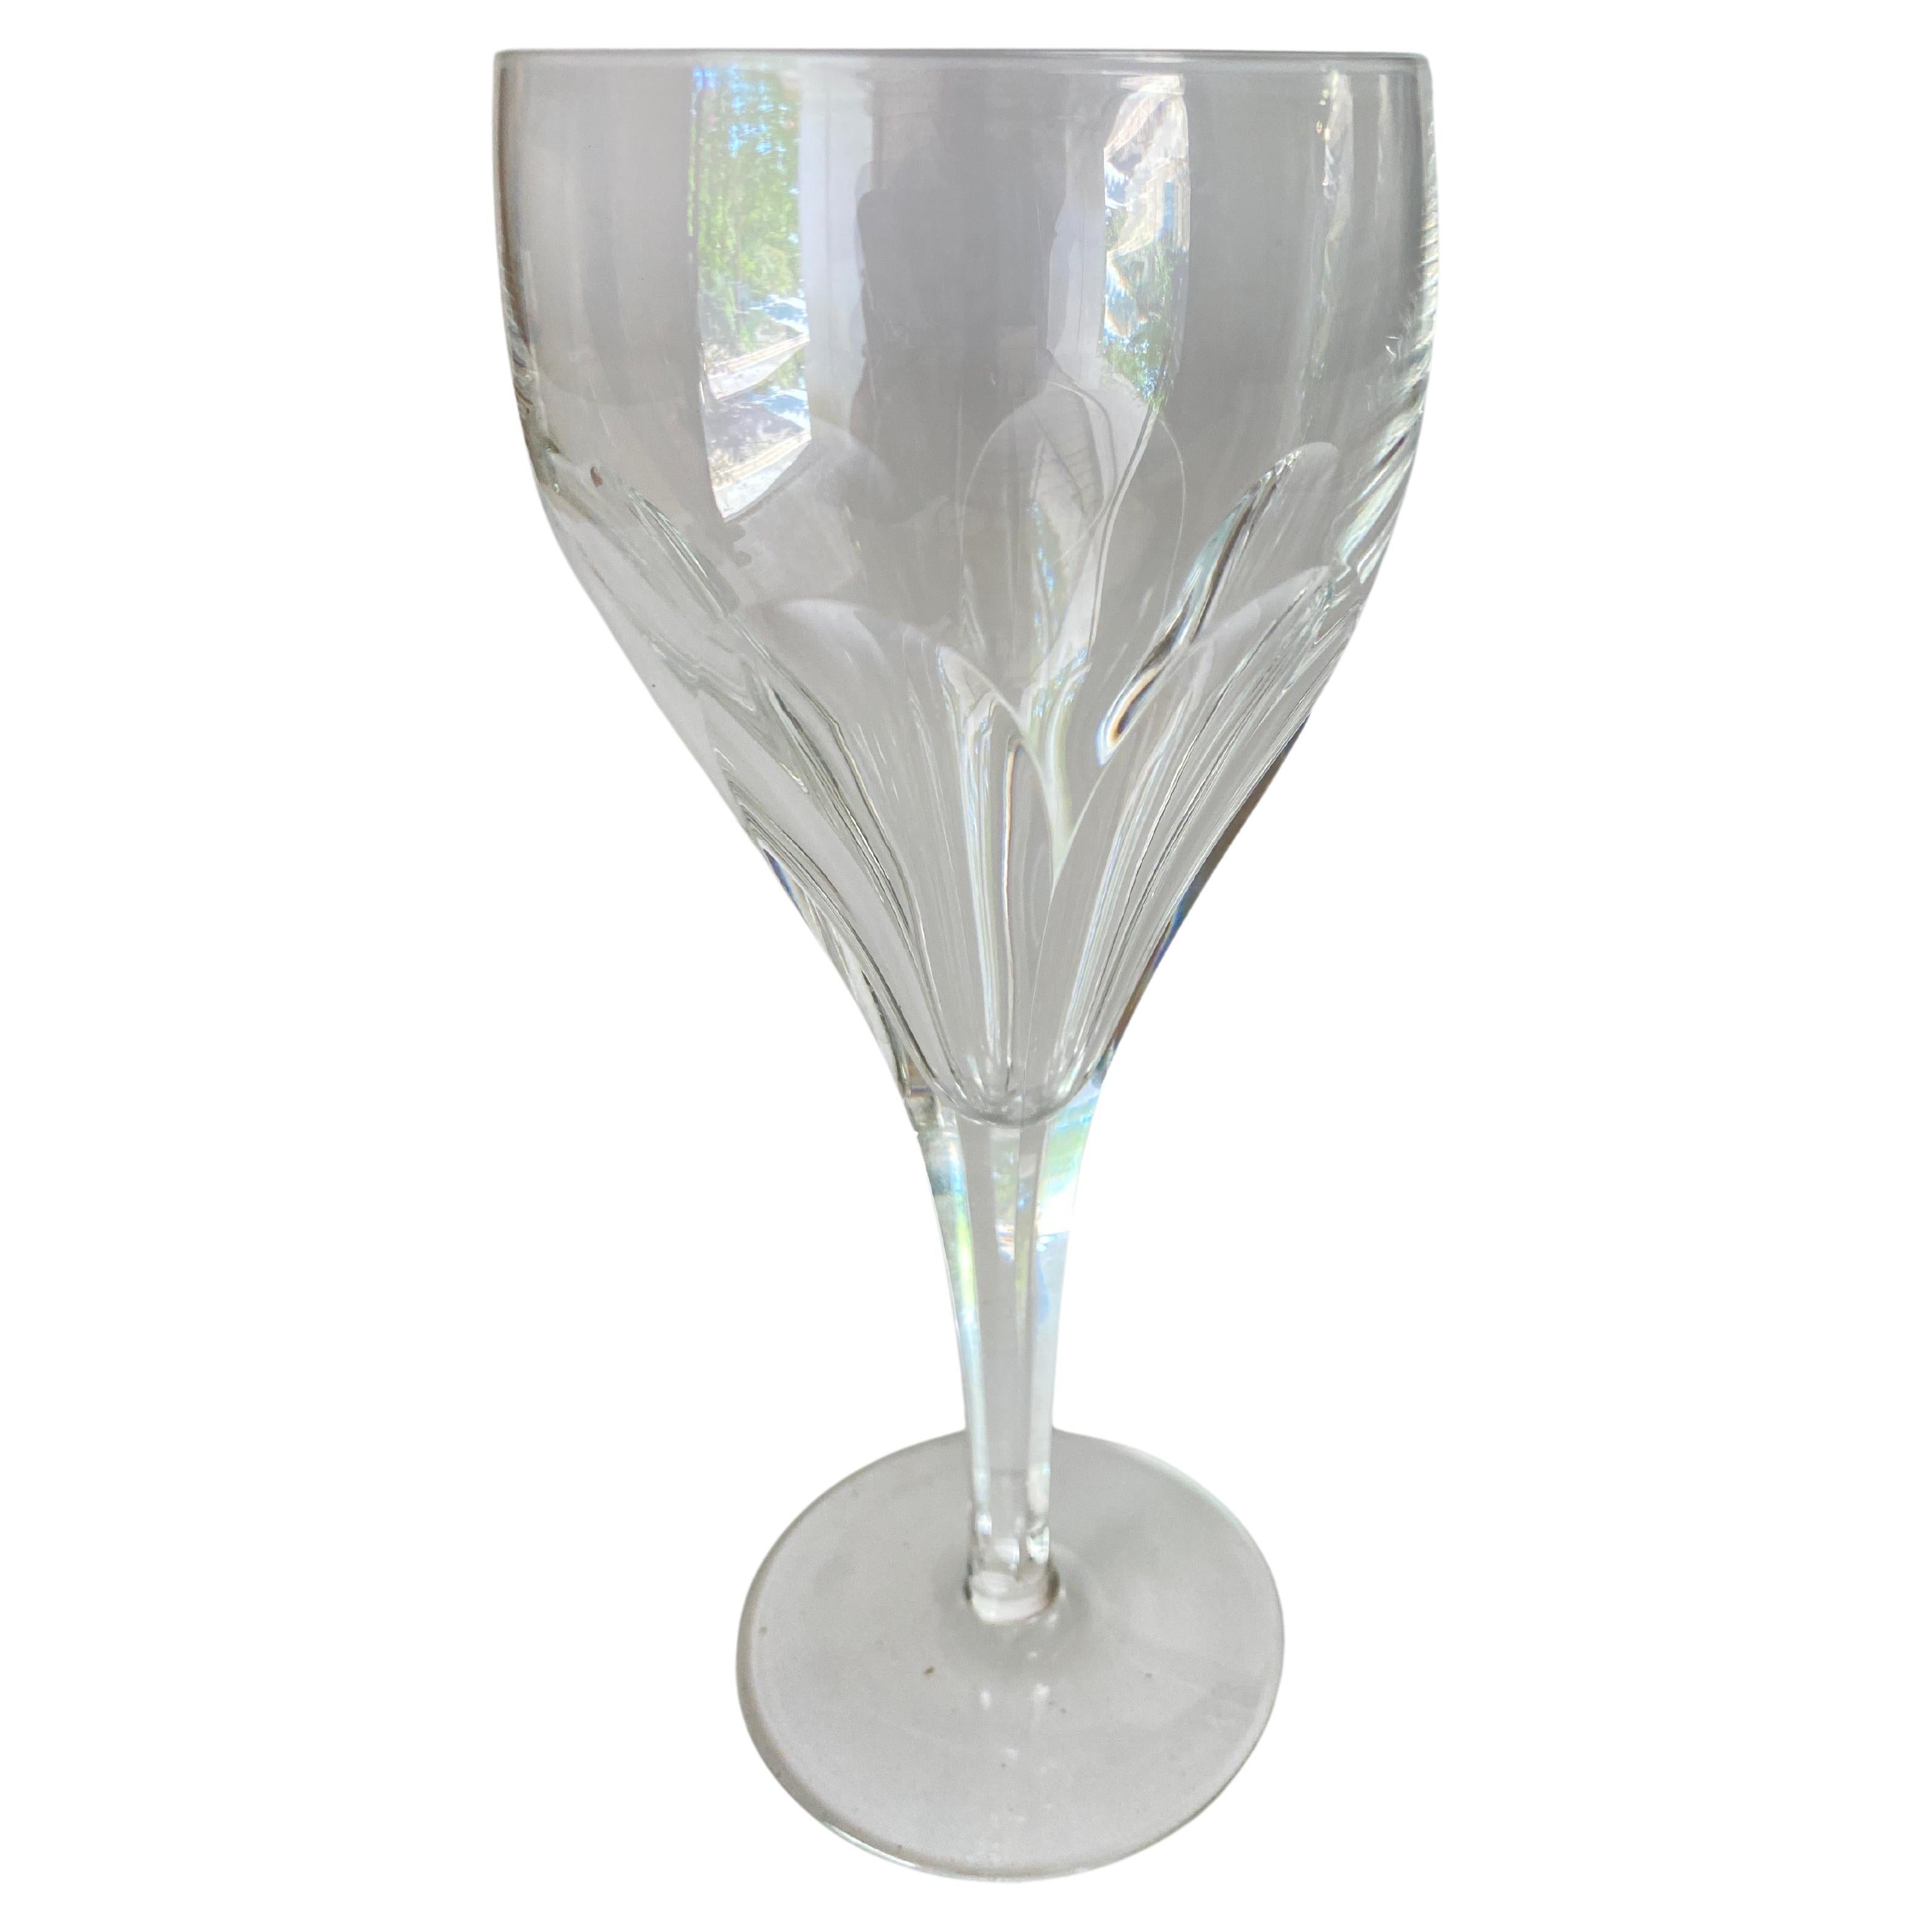 Set de 8 verres à vin, en transparent  couleur. Les verres sont gravés de décorations.
Bon état. Ils sont en cristal et ont une forme élégante.